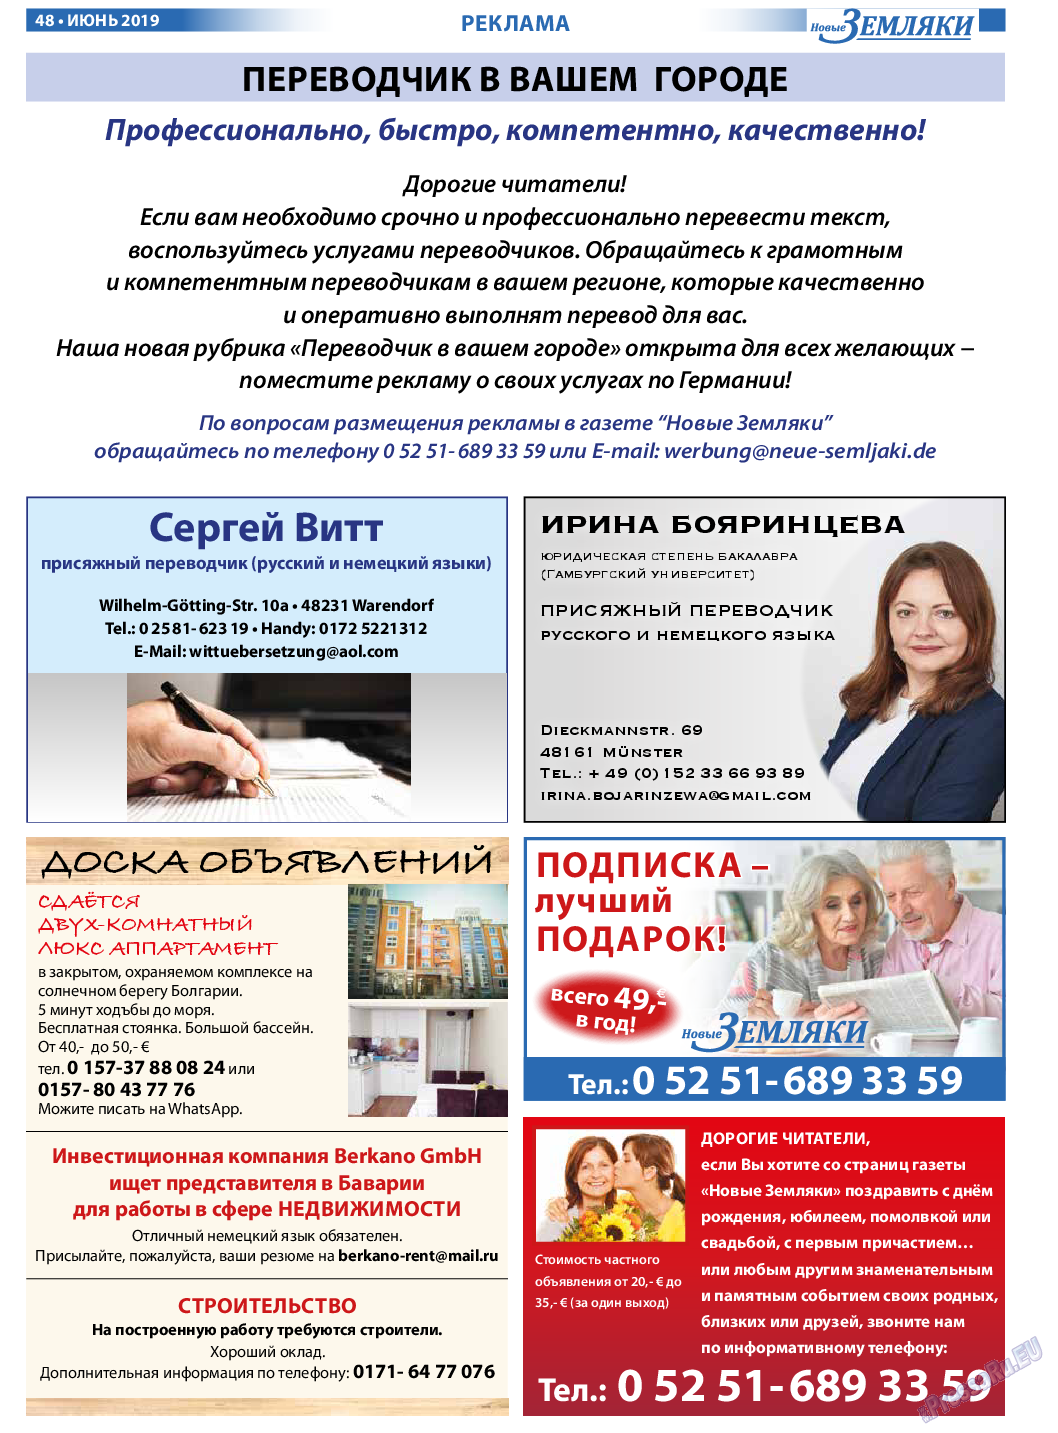 Новые Земляки, газета. 2019 №6 стр.48